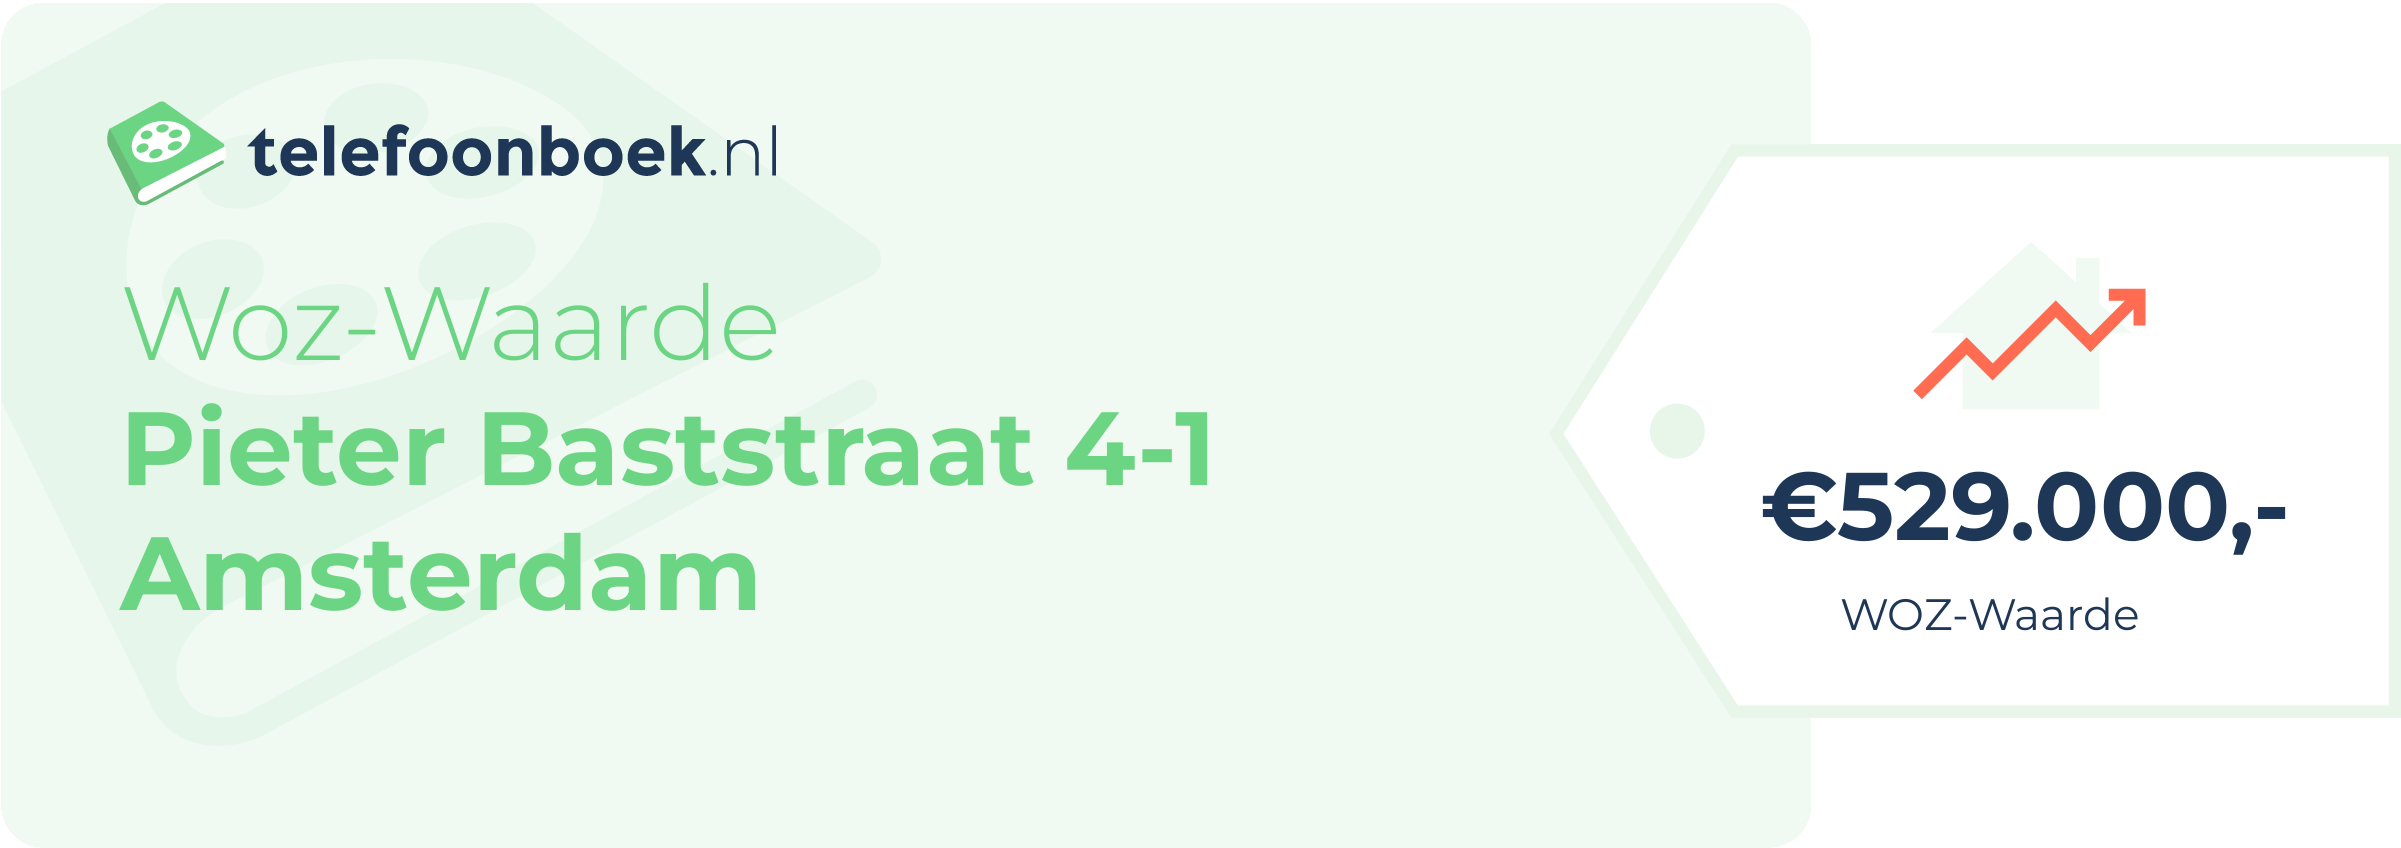 WOZ-waarde Pieter Baststraat 4-1 Amsterdam